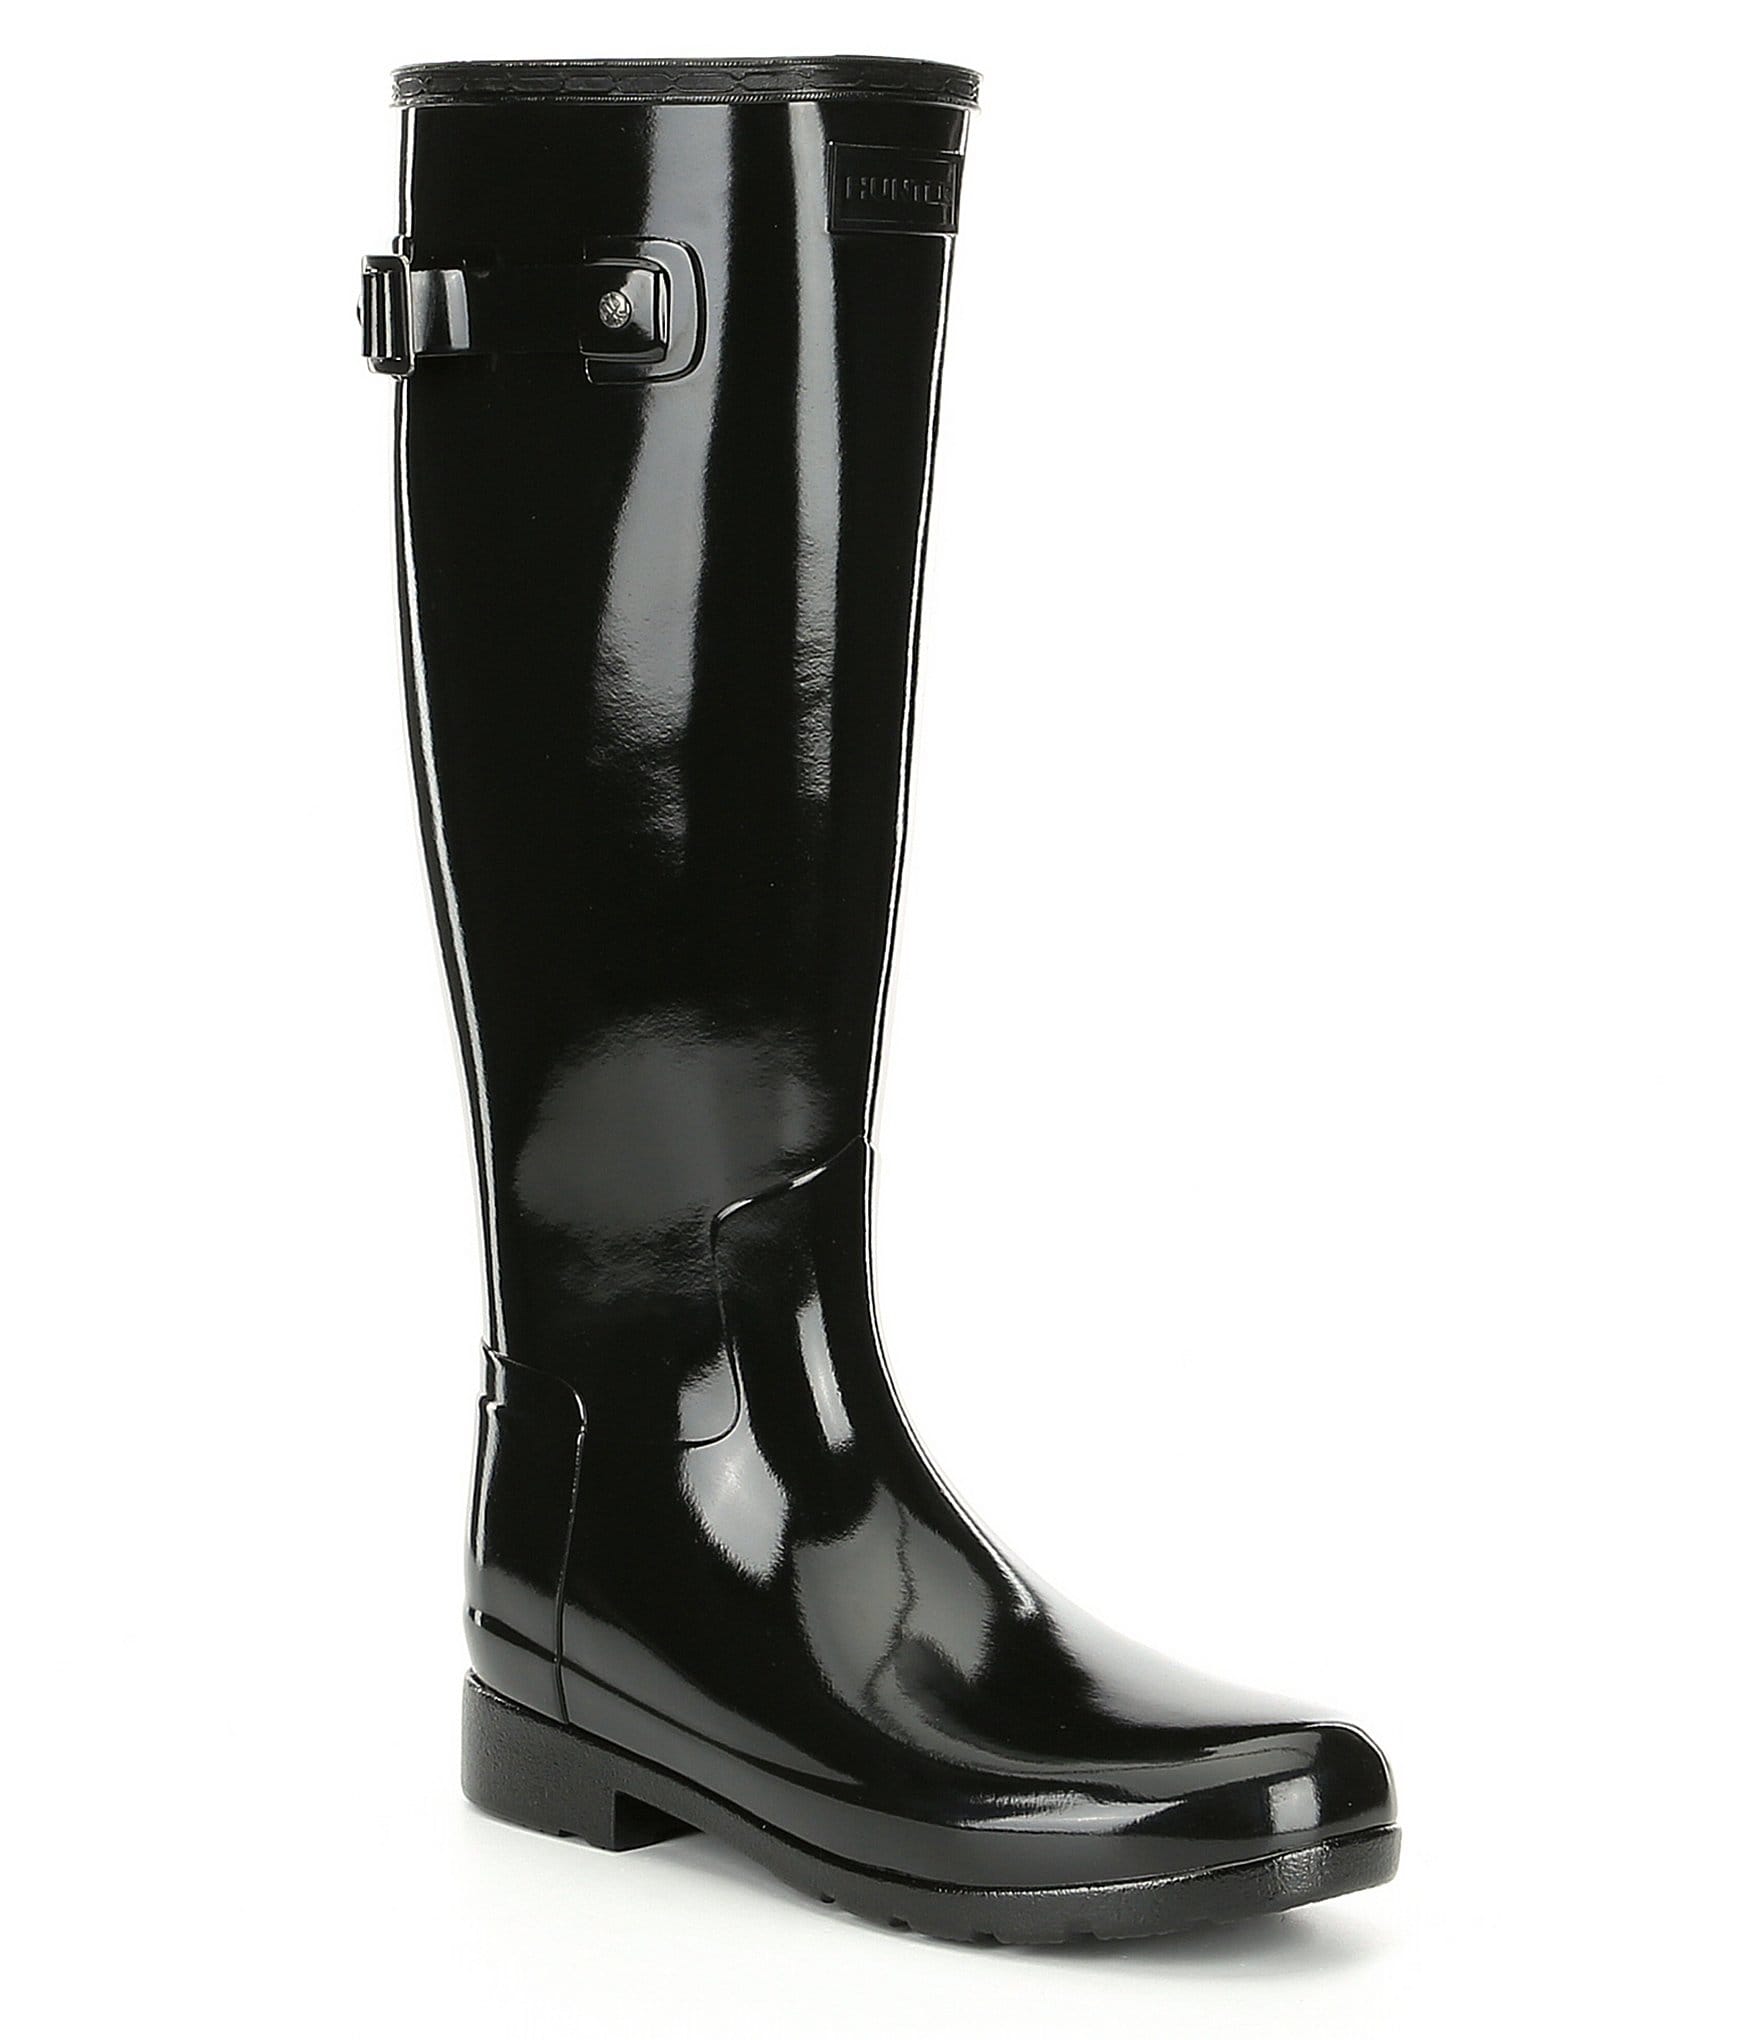 calf high rubber boots